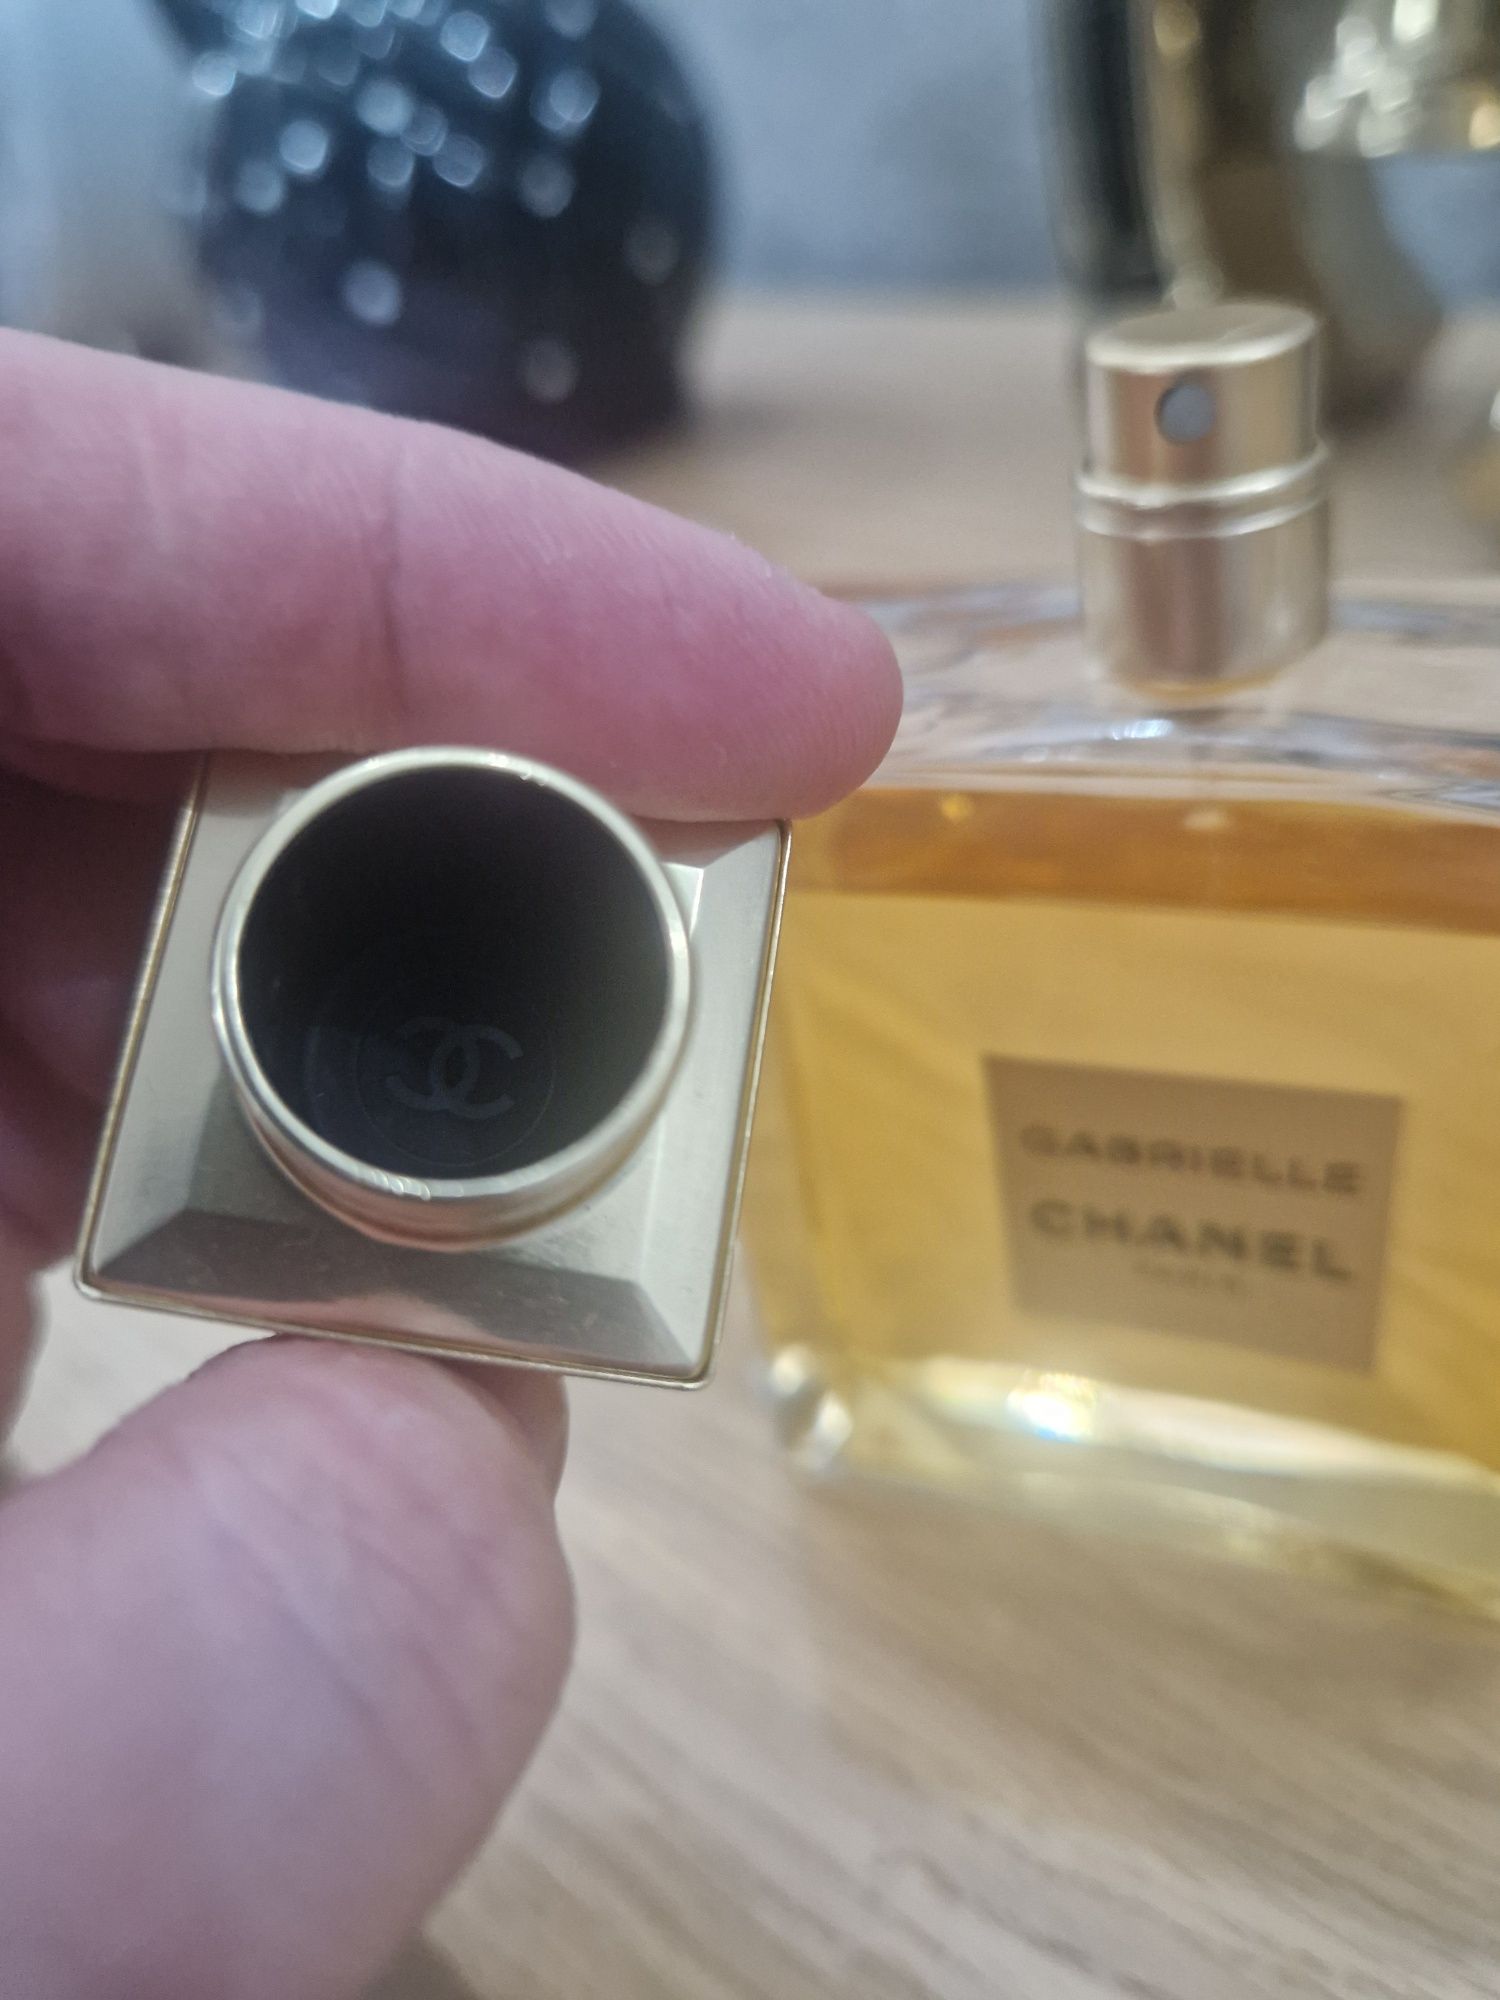 Oryginalne perfumy Chanel Gabrielle Essence 100ml